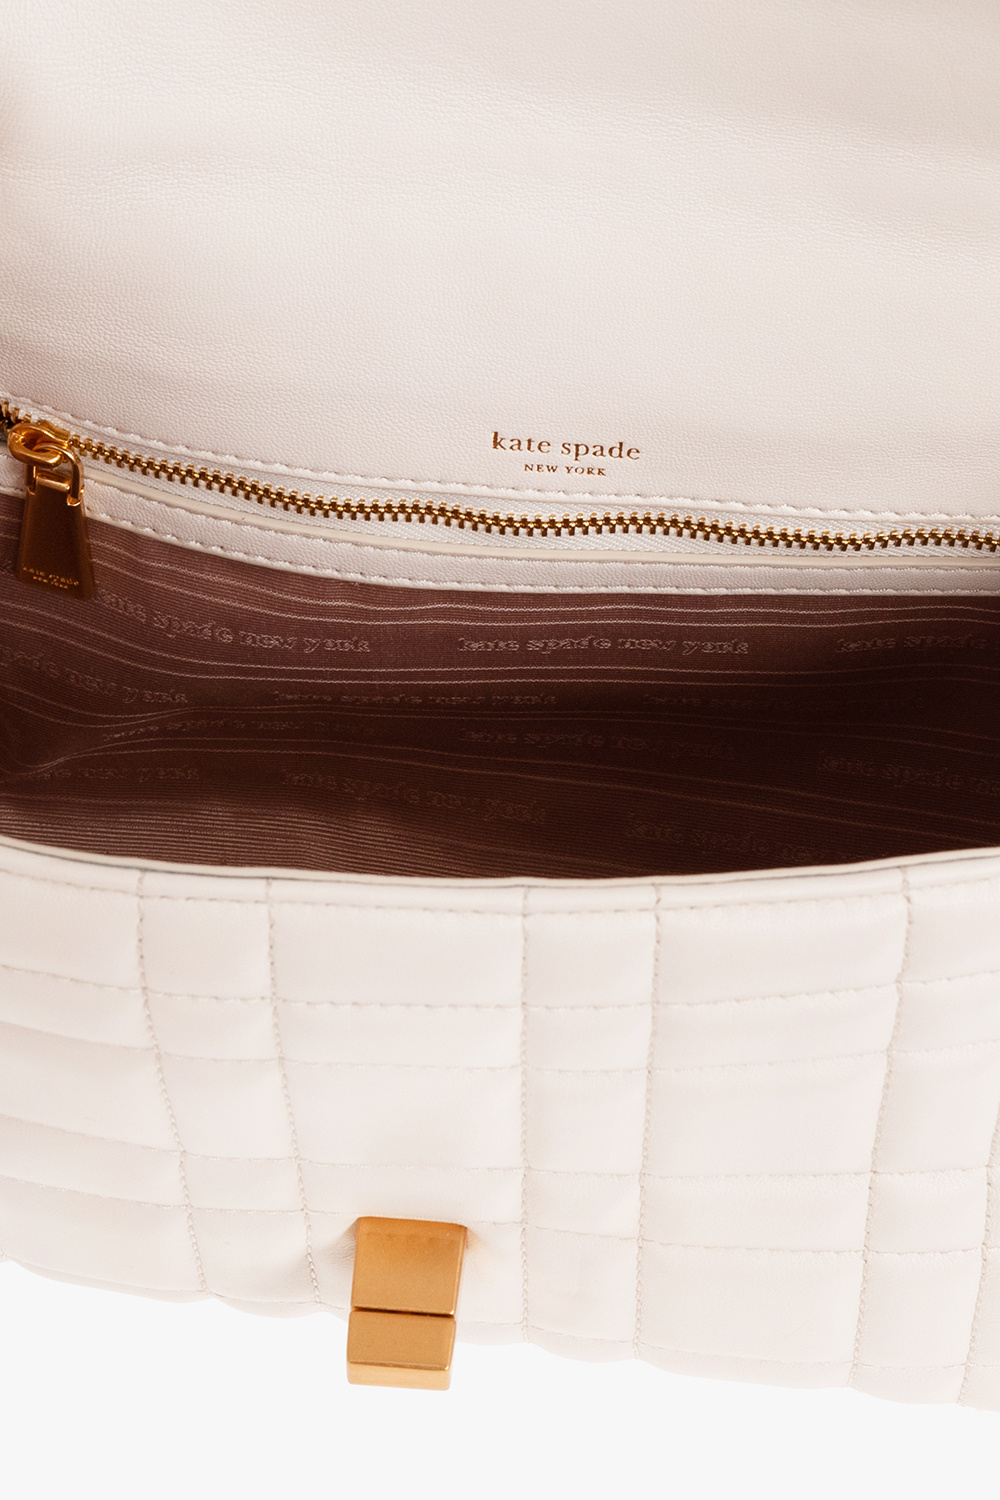 Kate Spade ‘Evelyn’ shoulder bag